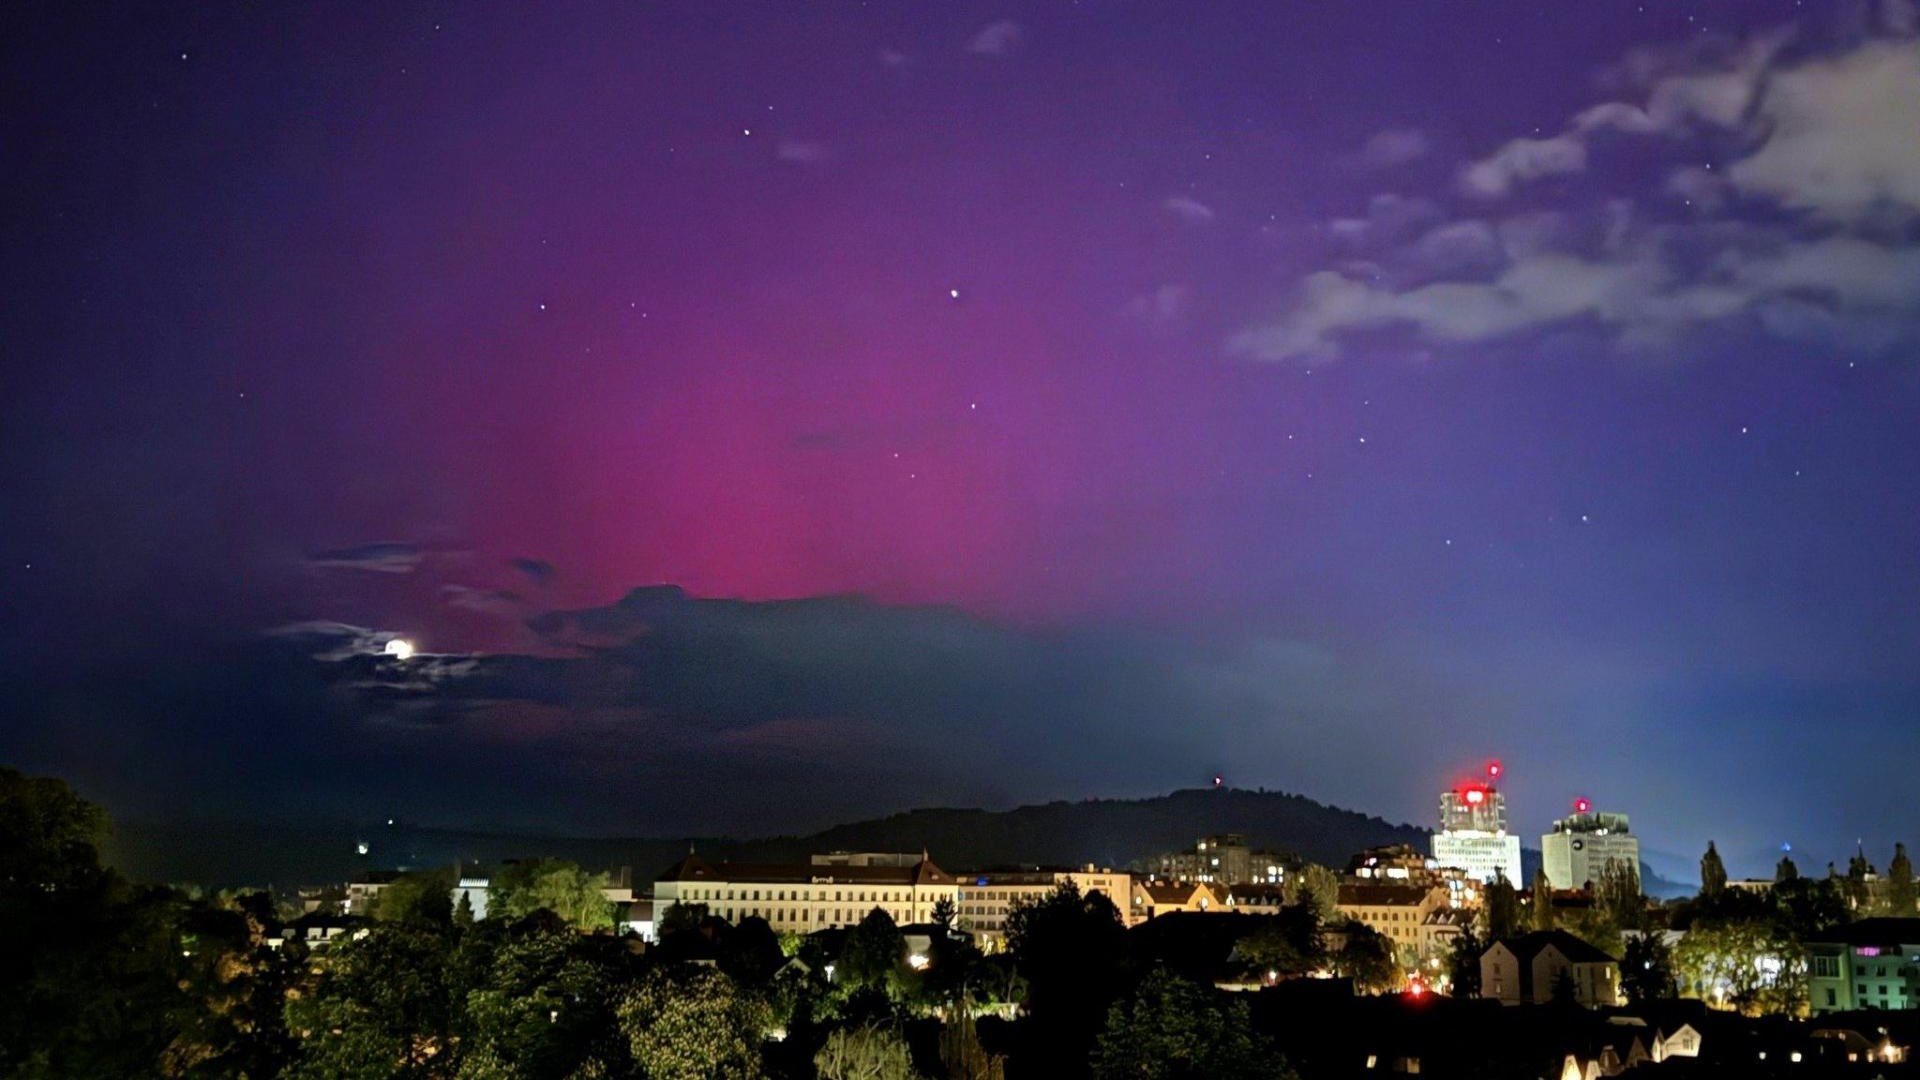 Zakaj smo videli auroro v Sloveniji in kaj določa njeno barvo?